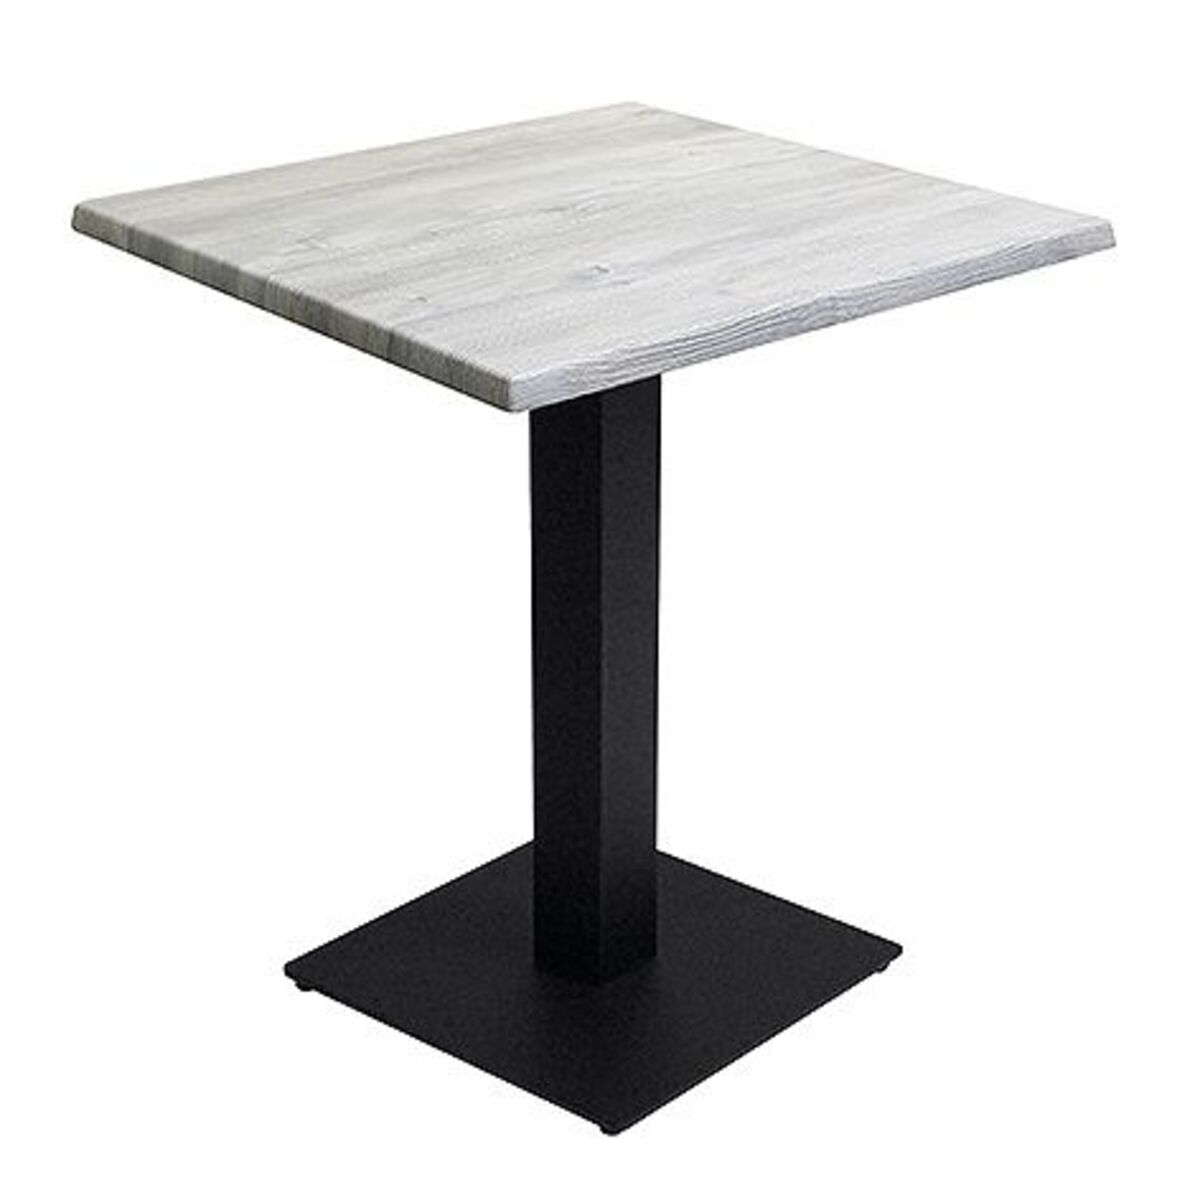 Table intérieure pied noir base carrée & plateau werzalit blanc 60x60 cm